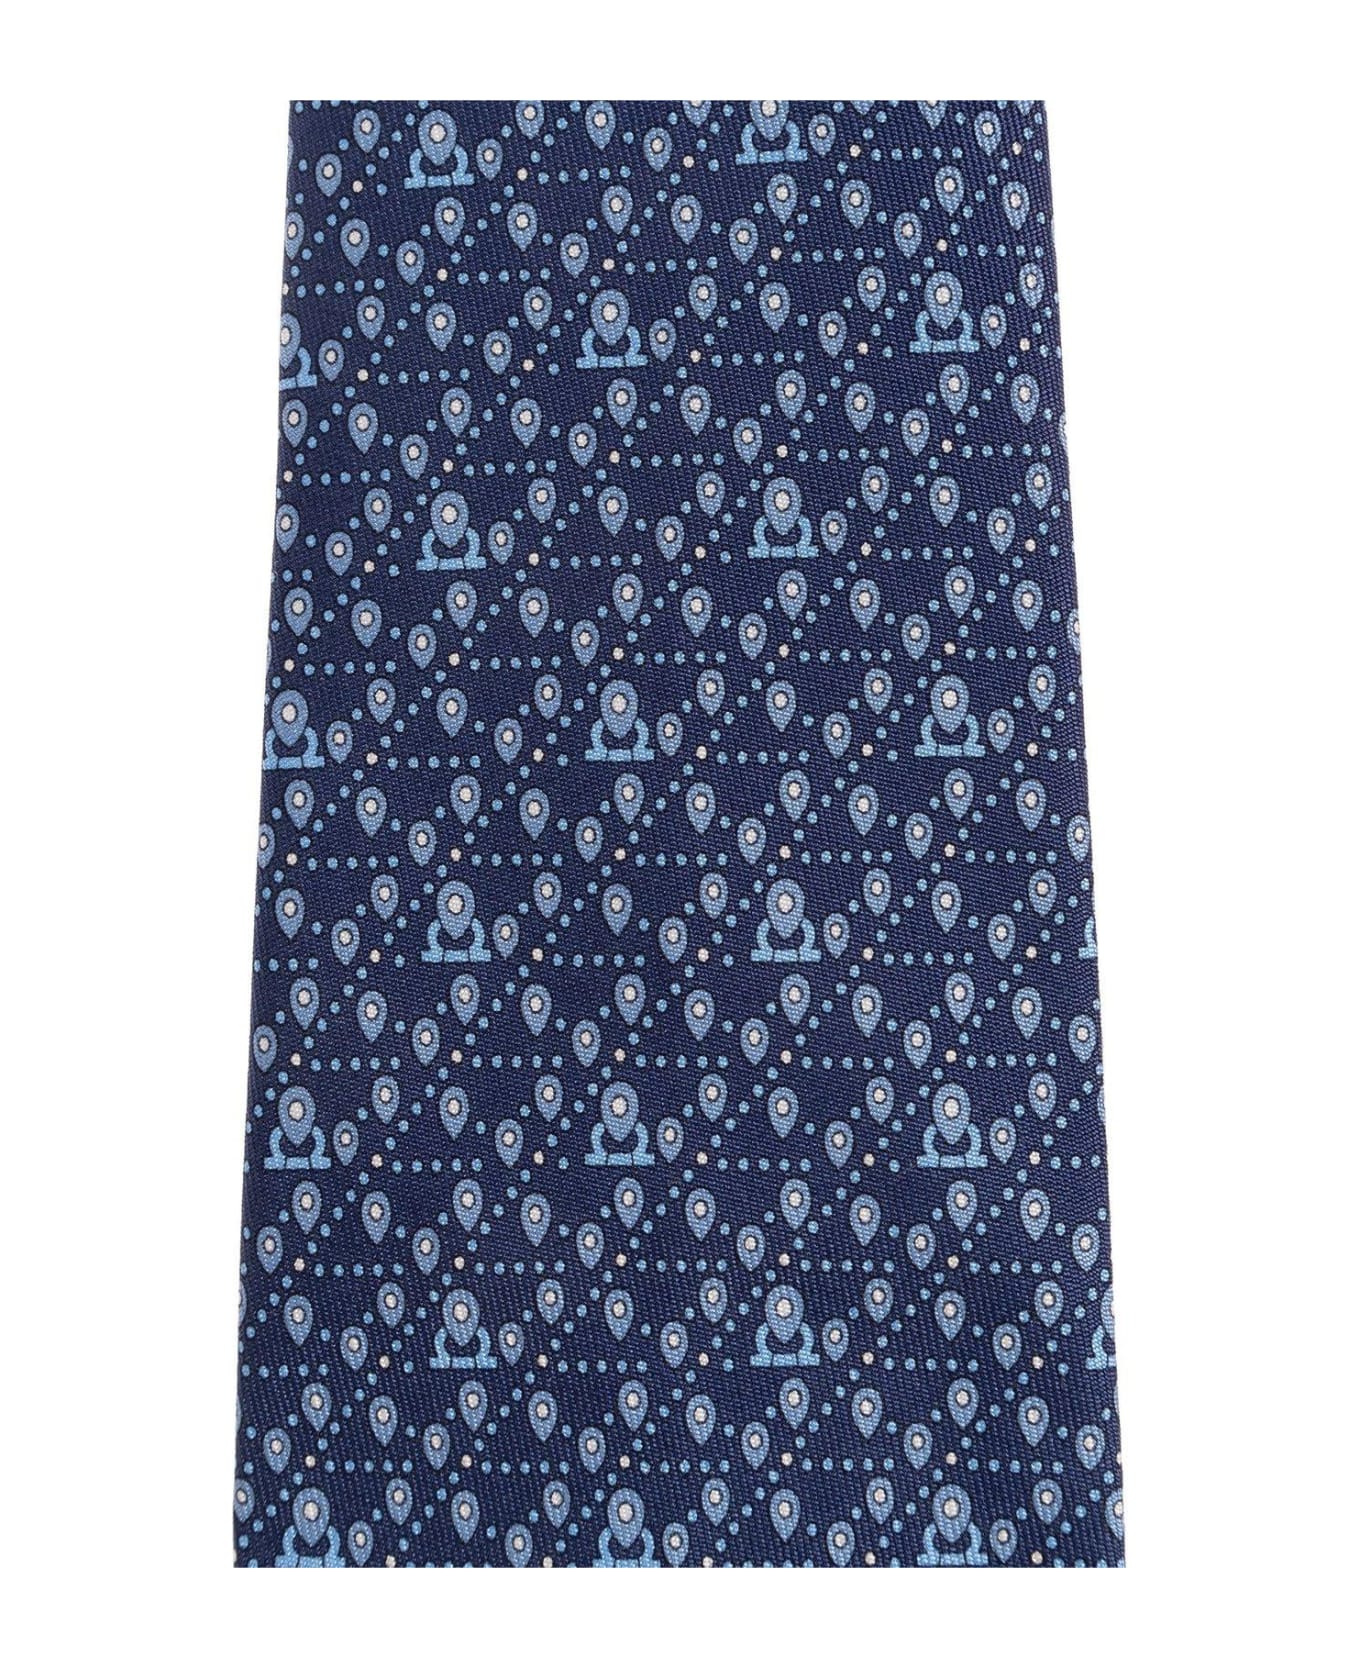 Ferragamo Tag Printed Tie - Navy ネクタイ